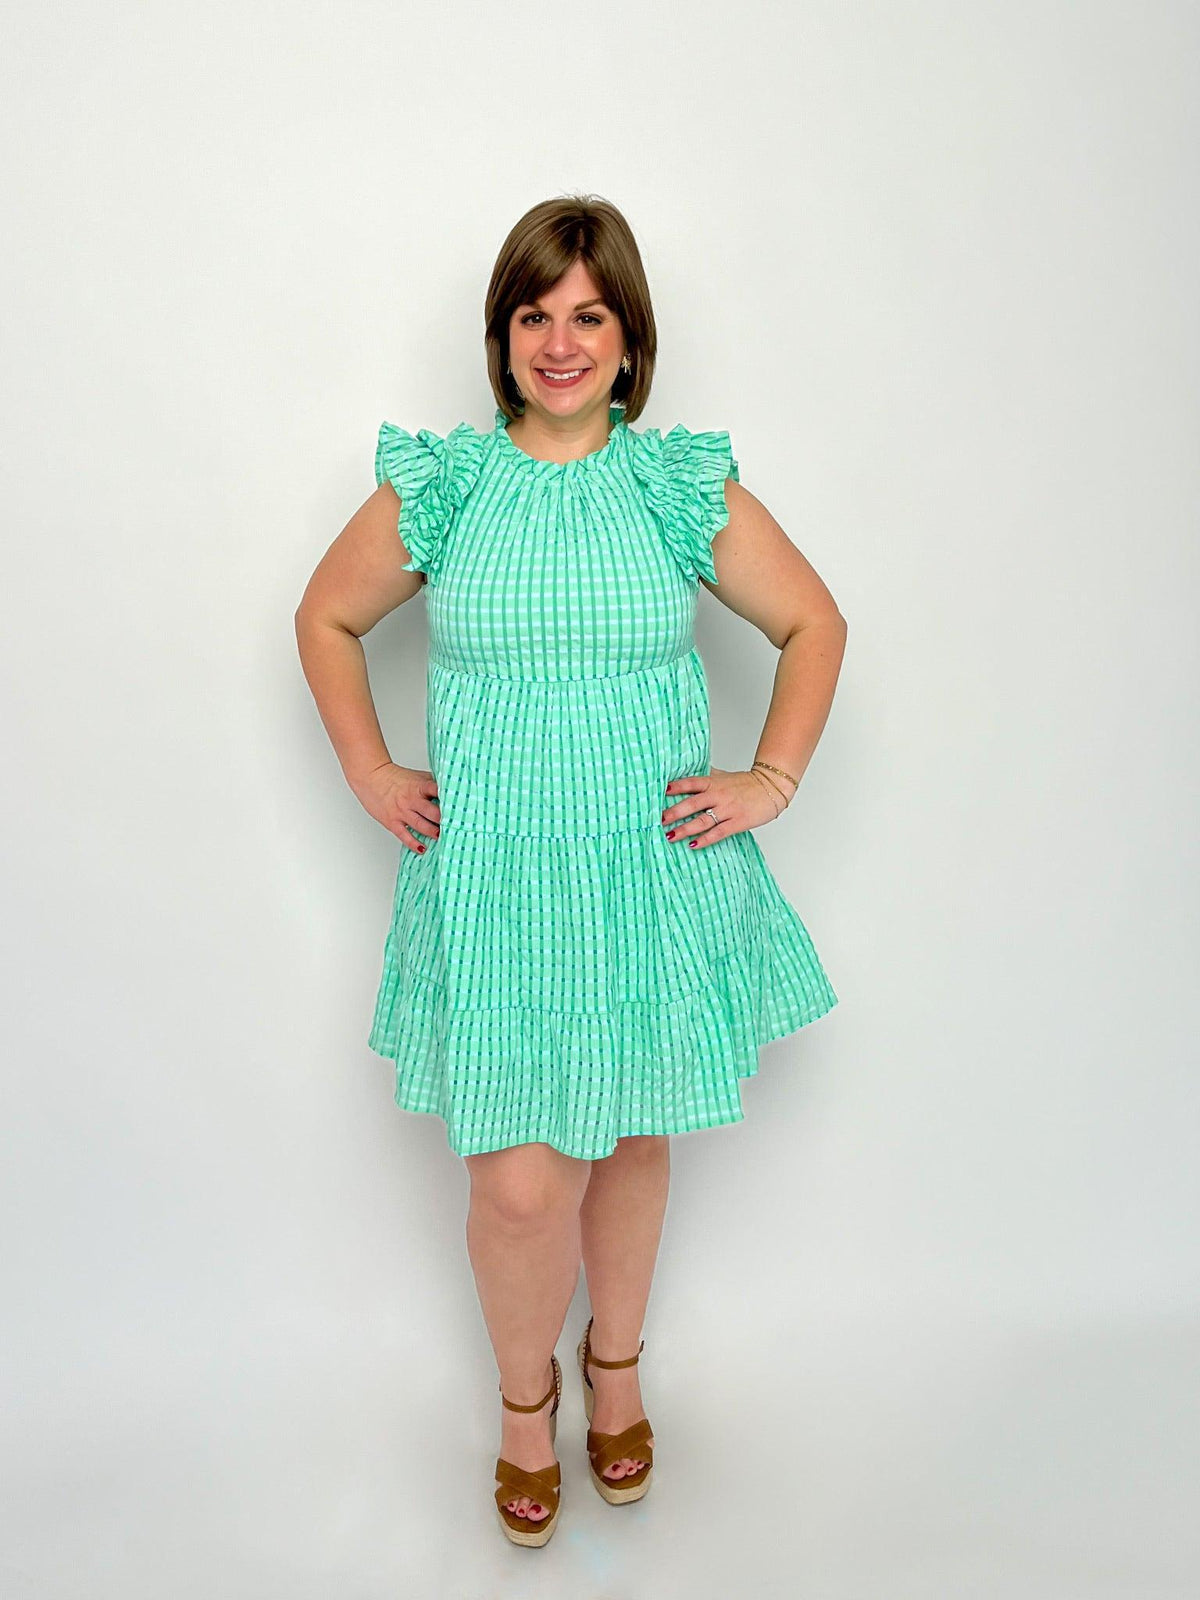 Bluegreen Checkered Ruffle Dress - SLS Wares